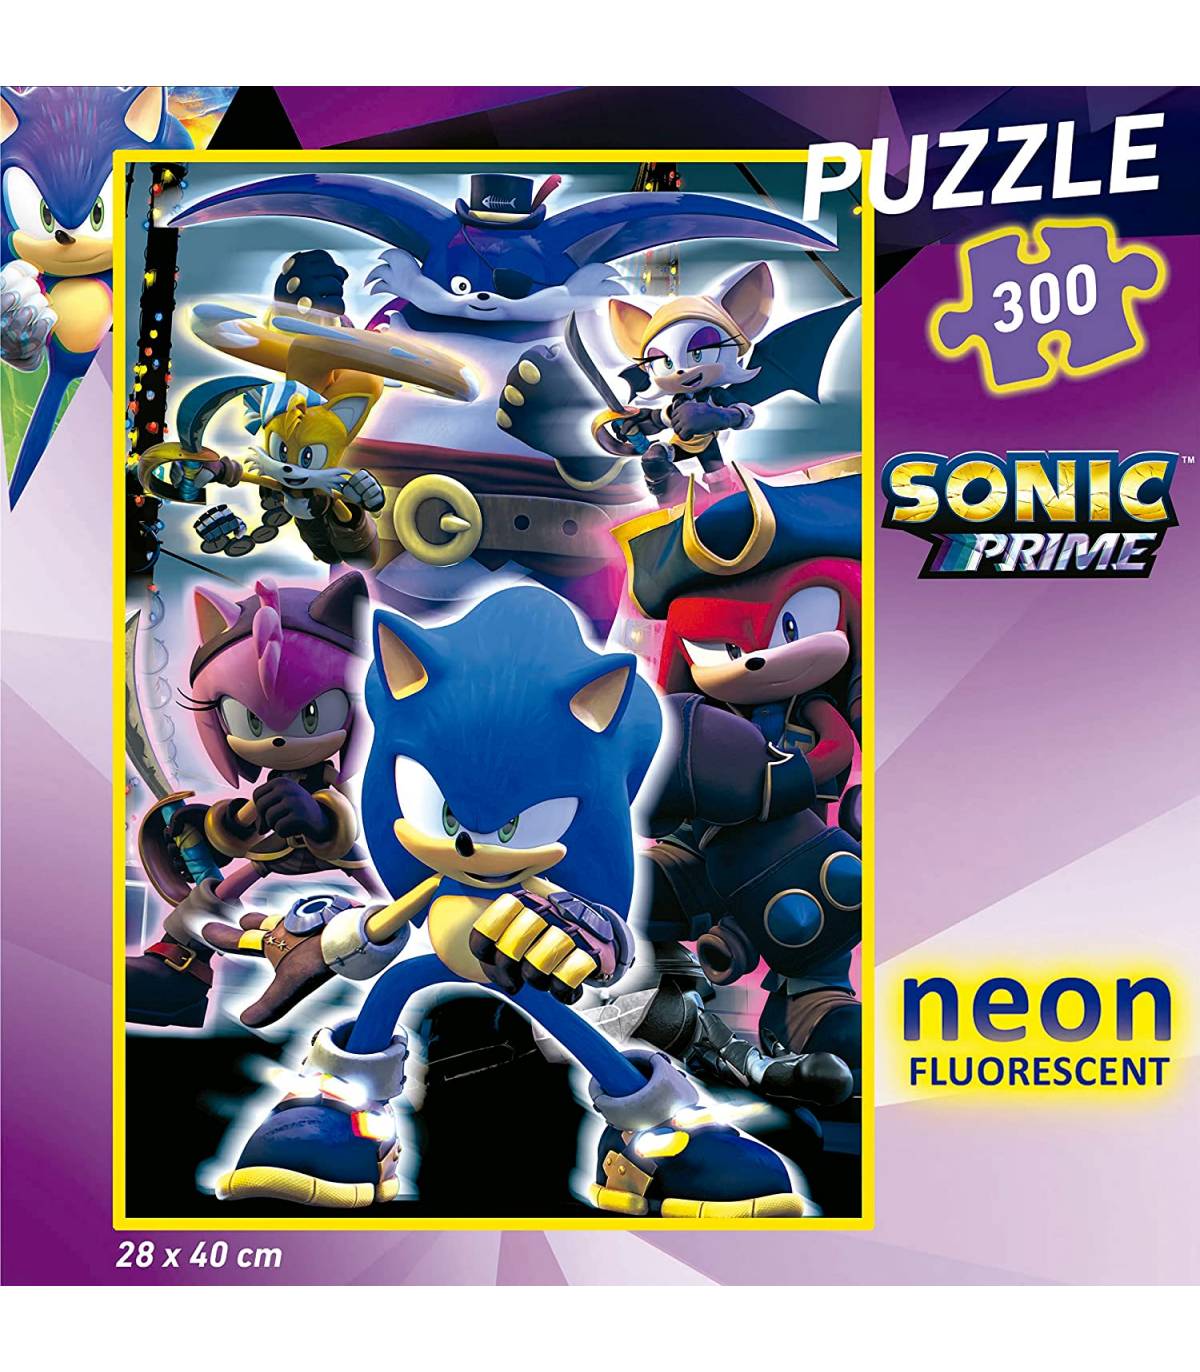 Educa Borras - Puzzle infantil Sonic Prime Neon de 300 peças ㅤ, PUZZLE  300+ pçs